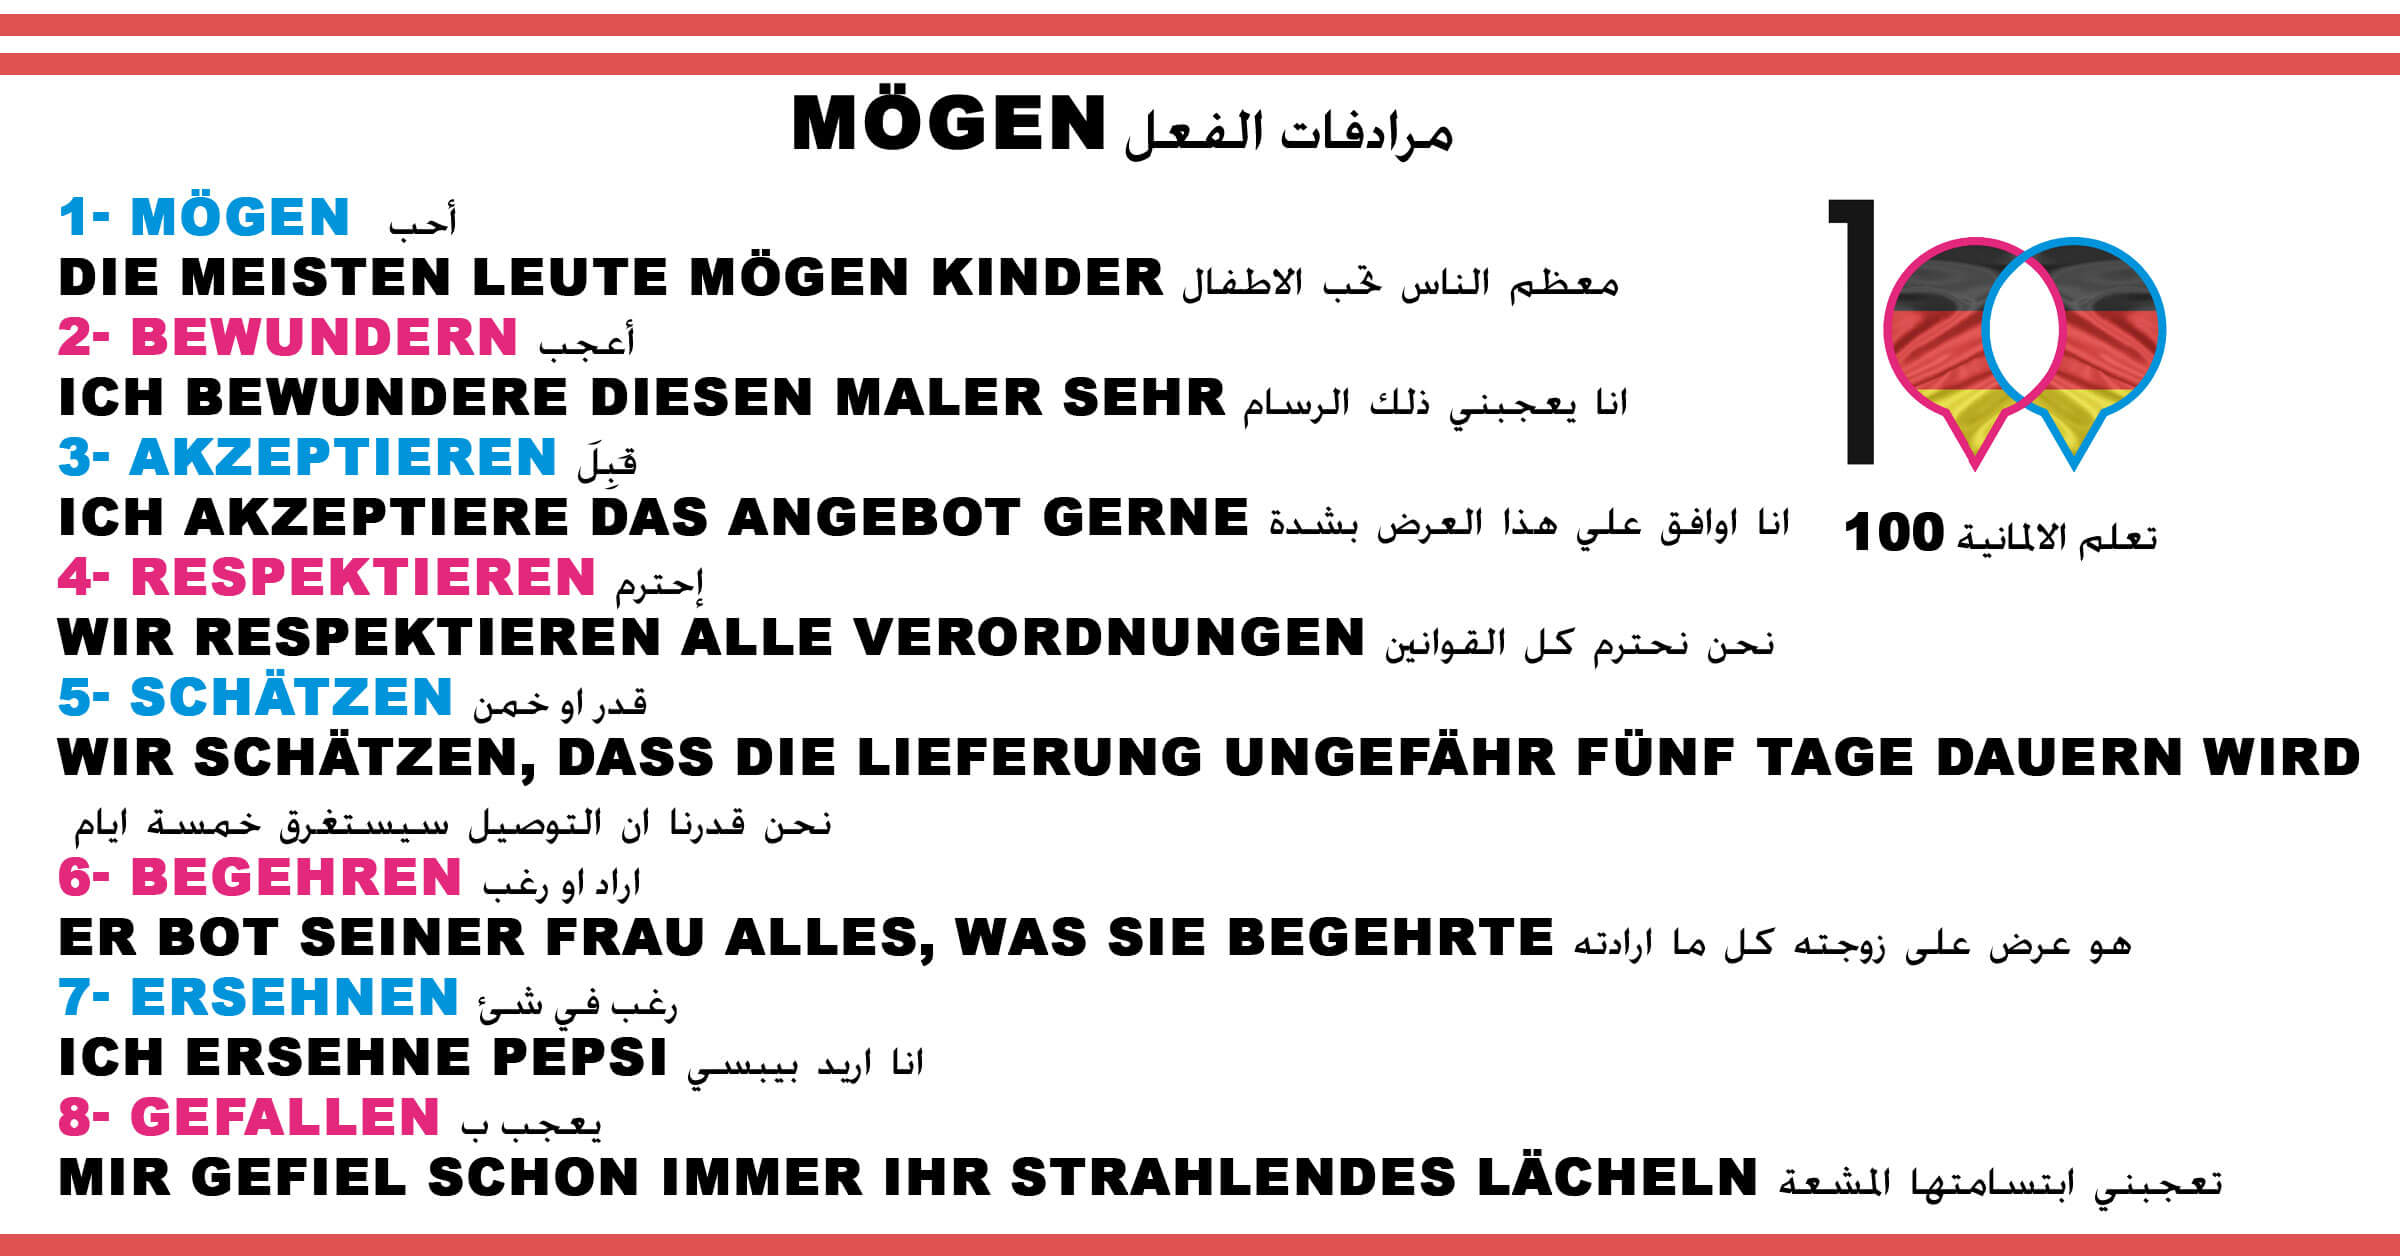 مرادفات الفعل Mögen - تعلم اللغة الالمانية mögen 1 تعلم اللغة الالمانية